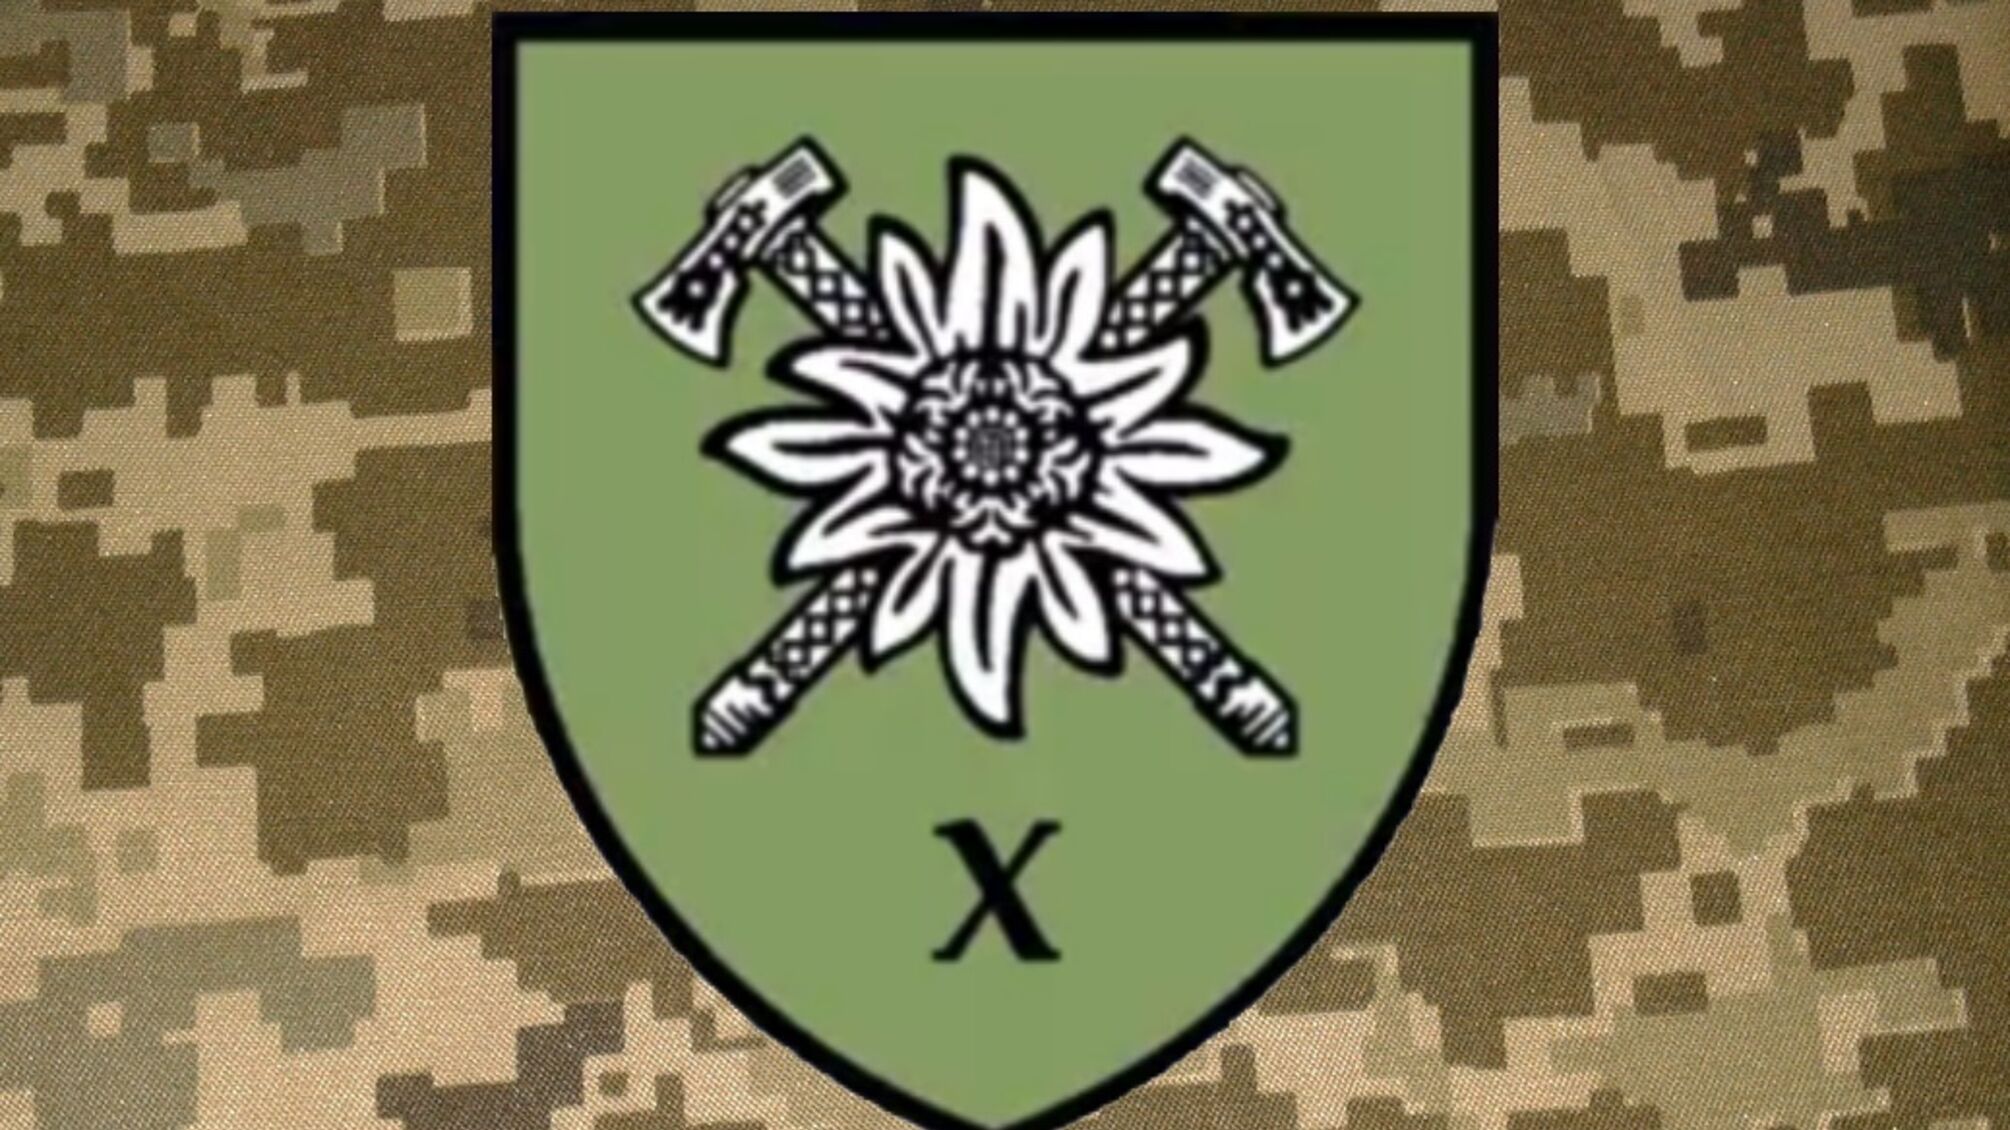 10-я бригада наконец-то получила от Зеленского почетное наименование 'Эдельвейс'